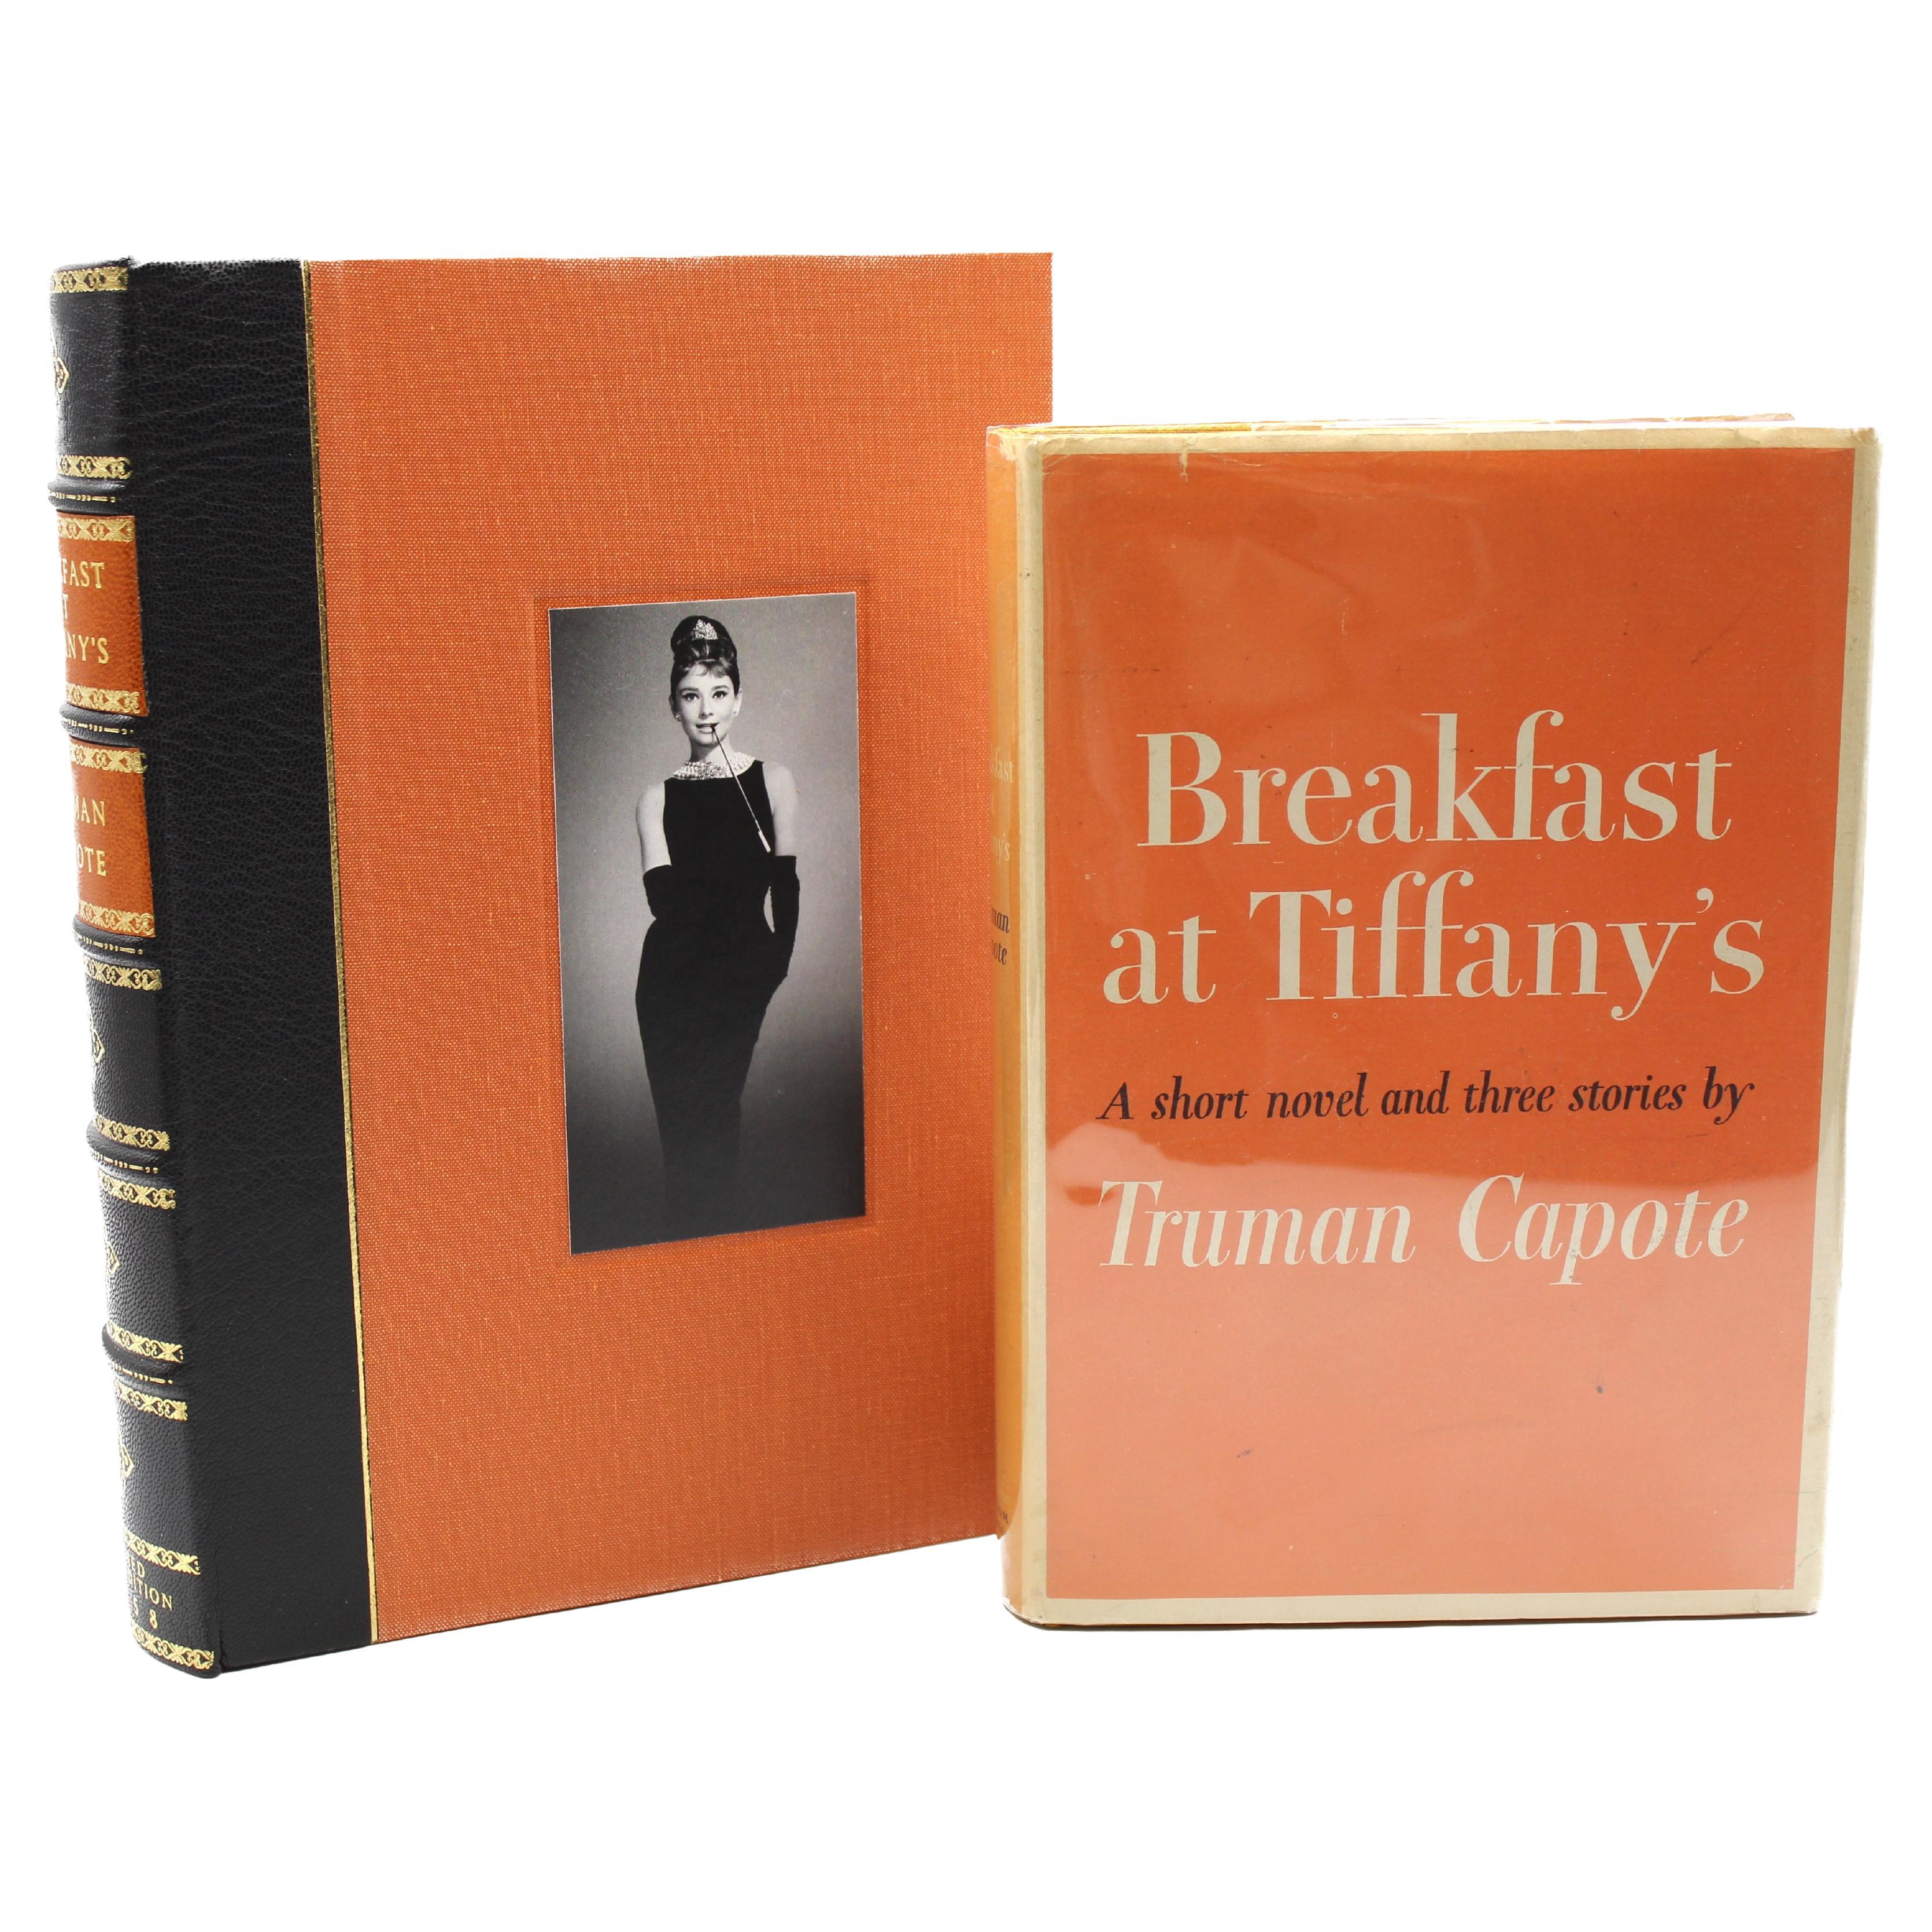 Frühstück bei Tiffany's, signiert von Truman Capote, Erstausgabe, 1958